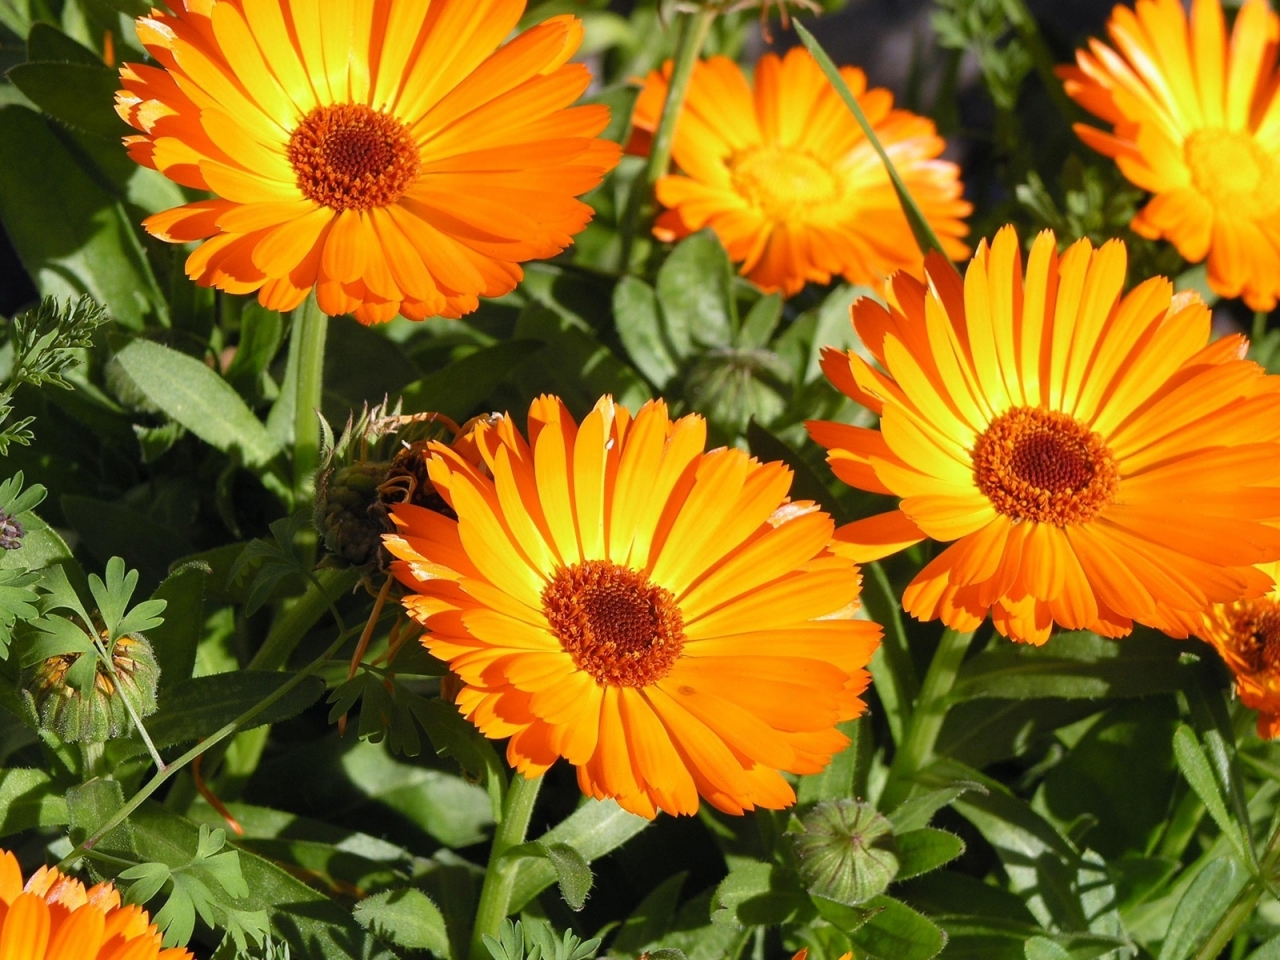 Sunbathing Flower for 1280 x 960 resolution